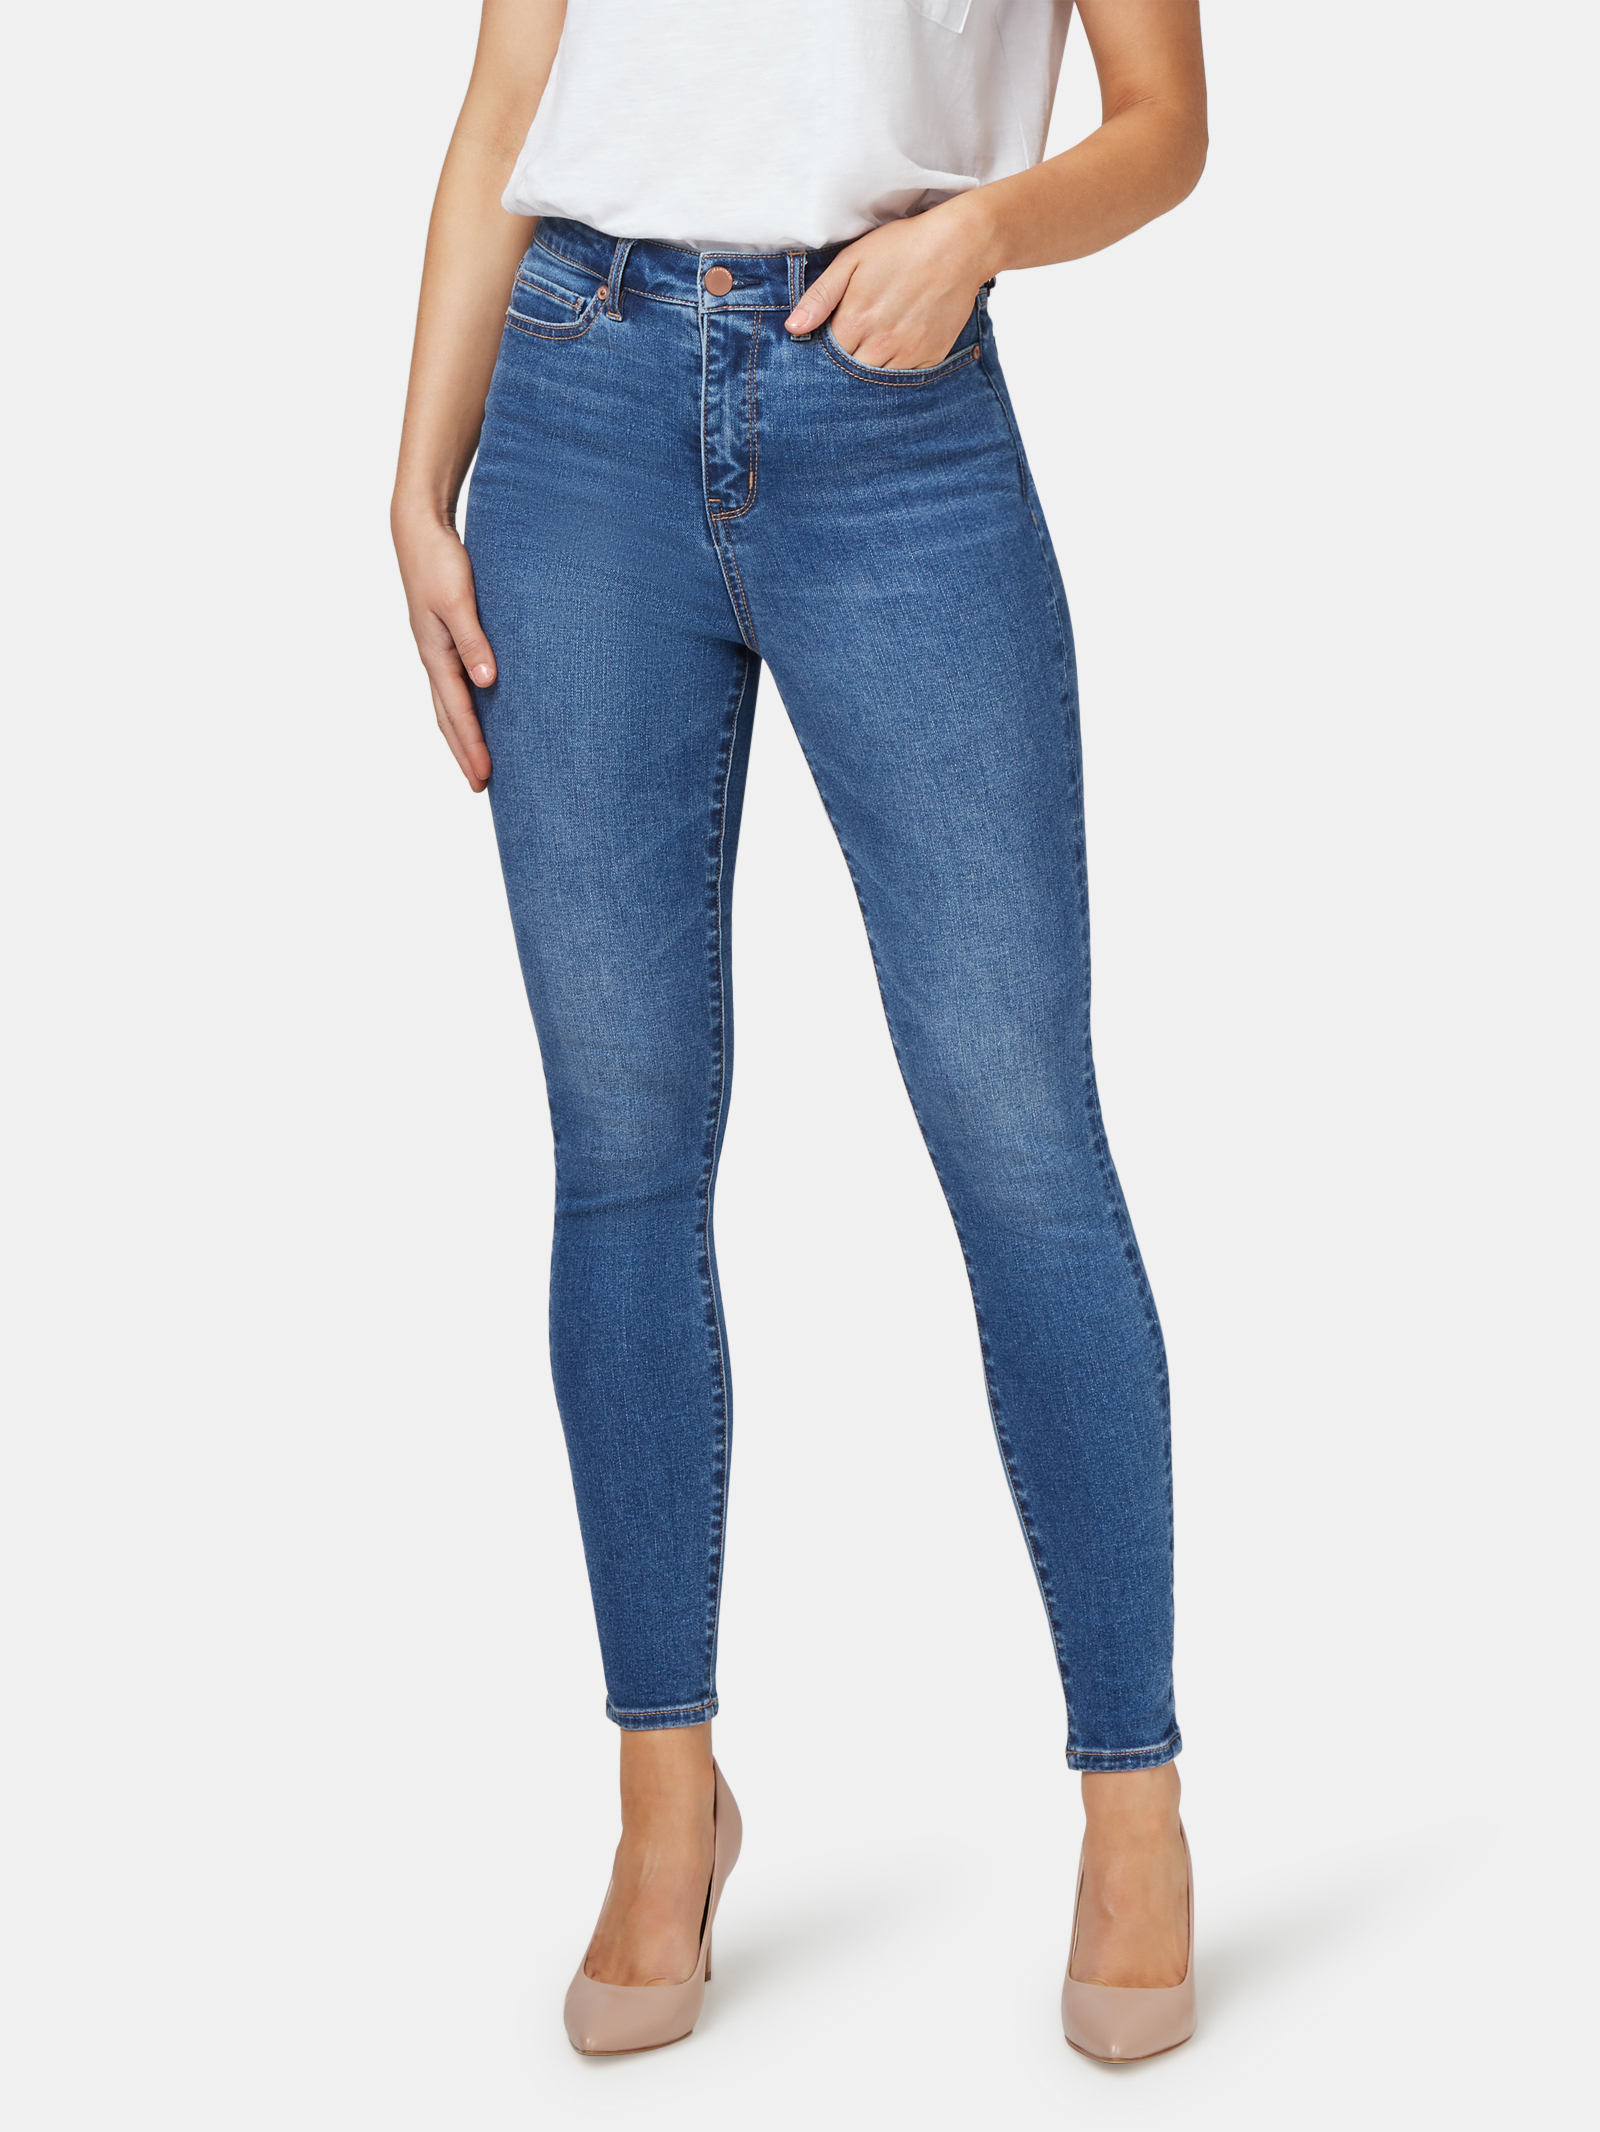 Femme westAce Skinny Jeans 